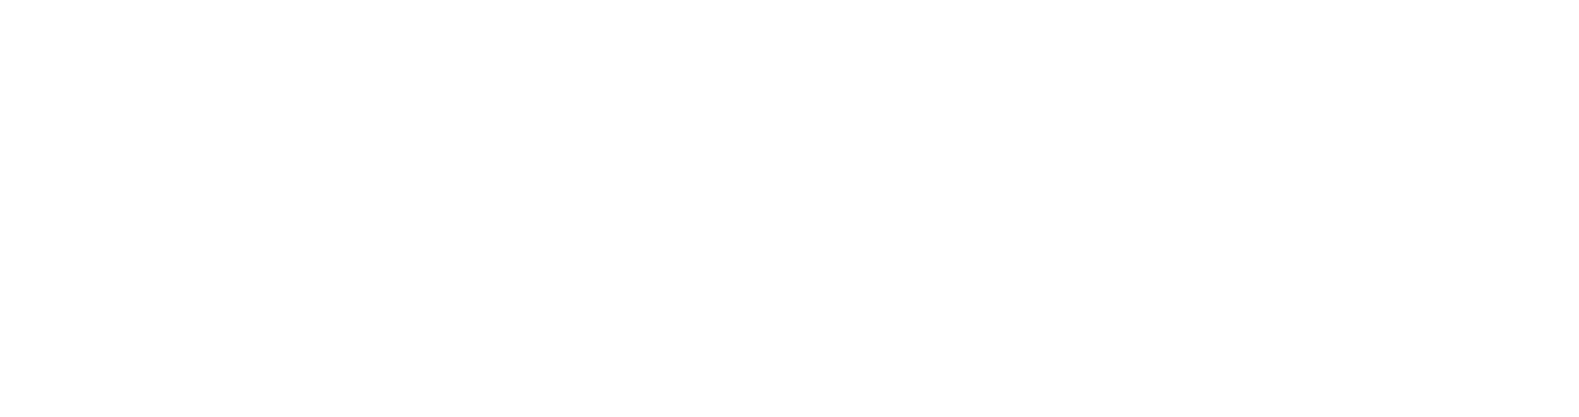 EnPro Industries
 logo grand pour les fonds sombres (PNG transparent)